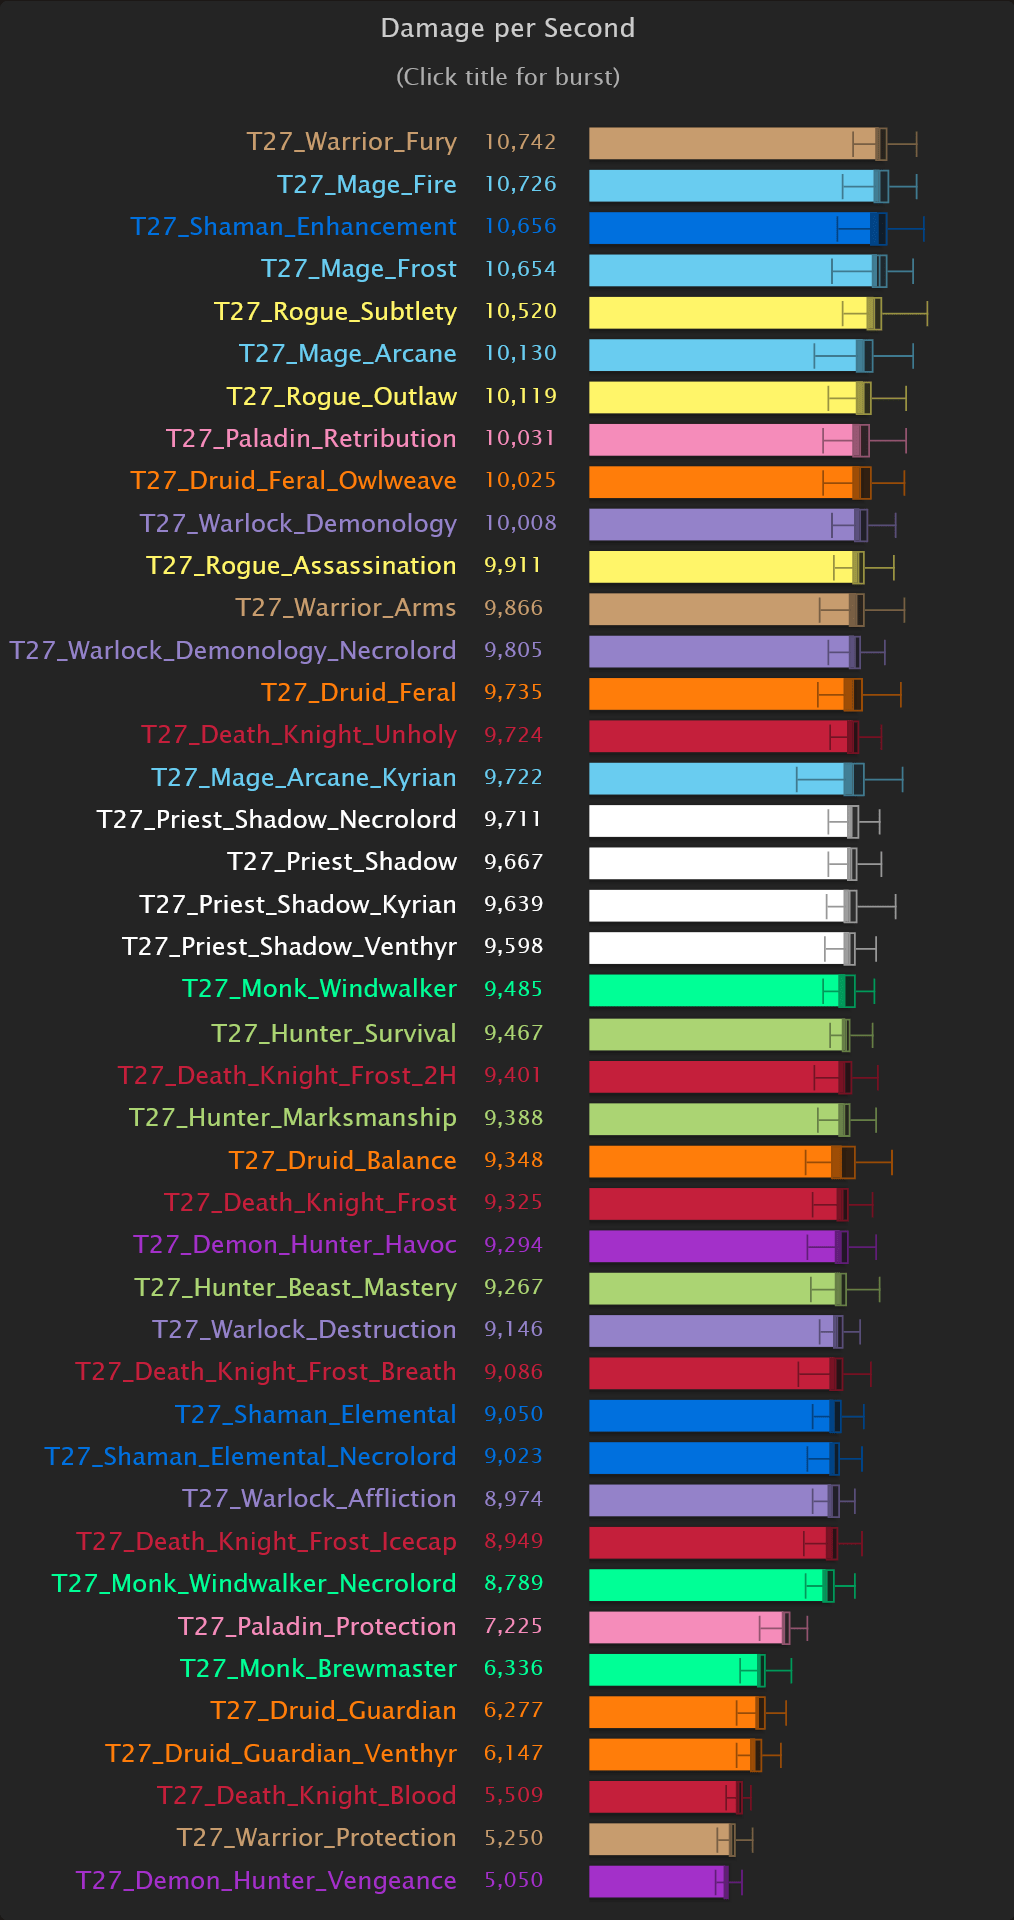 World of Warcraft: DPS-Rankings für Patch 9.2